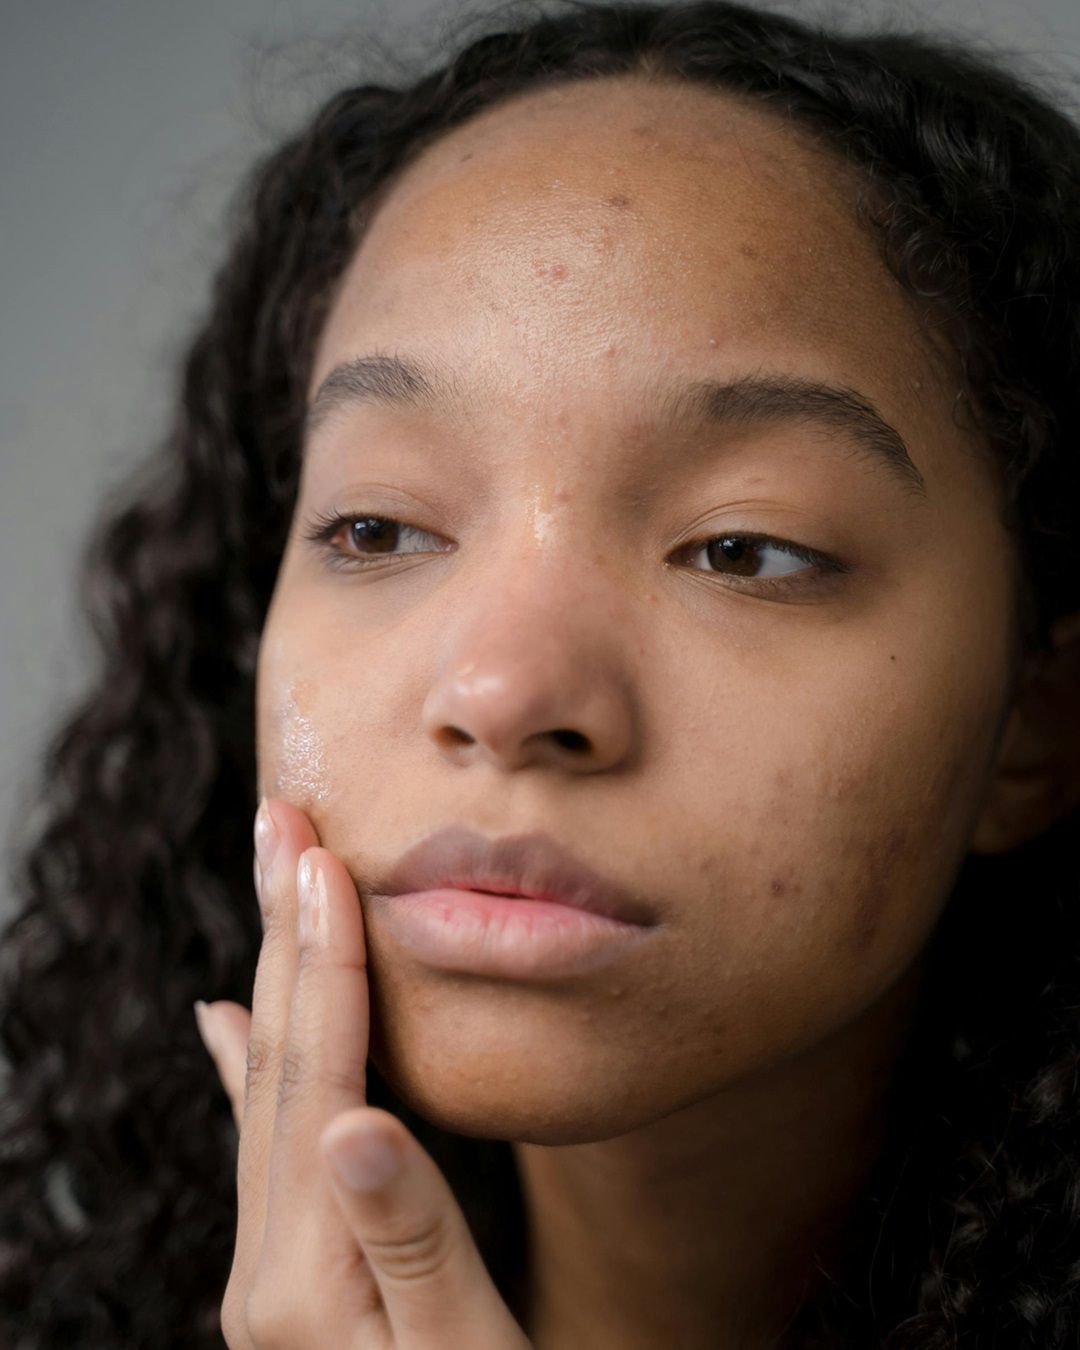 L'acne oggi, tra stigma sociale e nuovi trend Un nuovo studio esamina il problema e ci fa riflettere sull’impatto dell’acne su di chi ne soffre